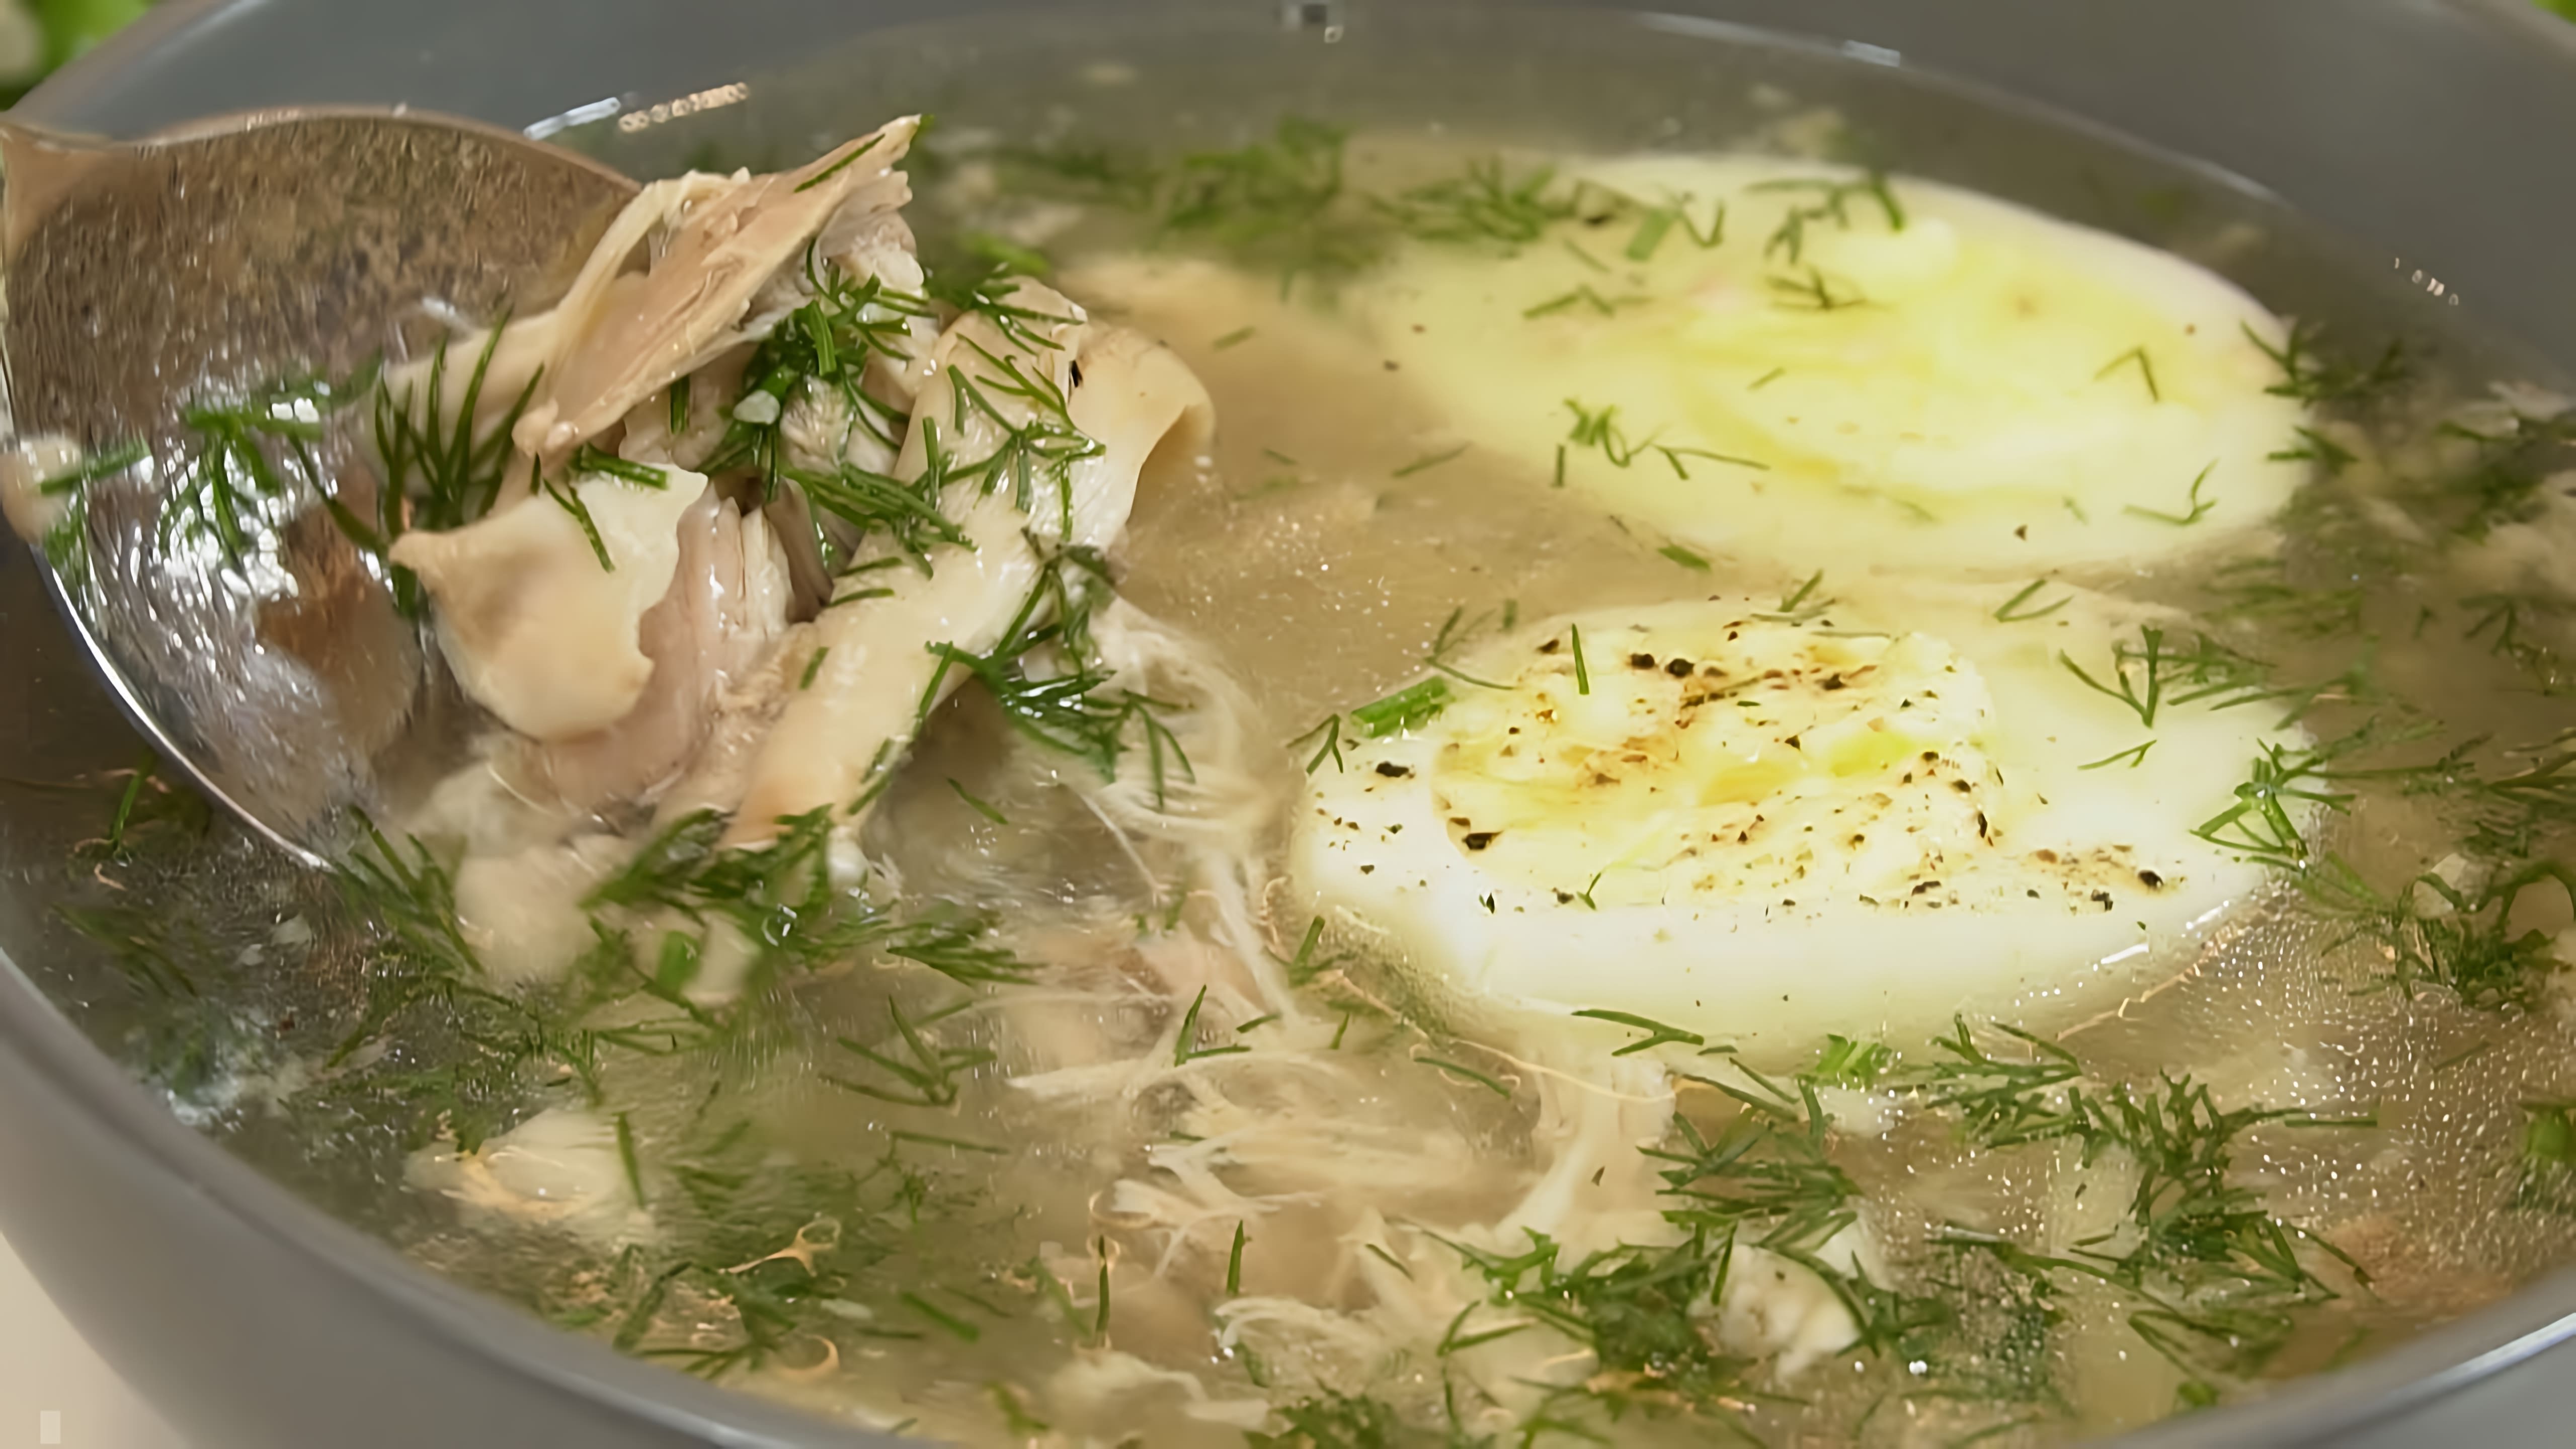 В этом видео демонстрируется процесс приготовления вкусного куриного супа